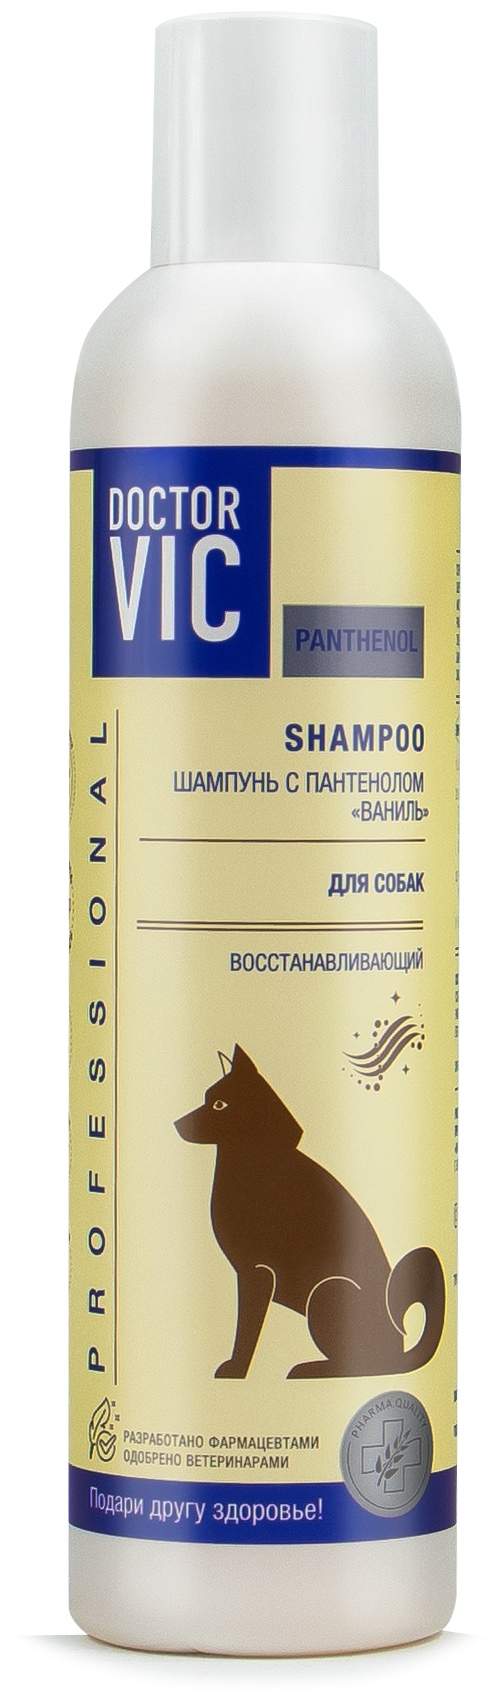 Шампунь для собак Doctor VIC Ваниль с пантенолом, 250 мл